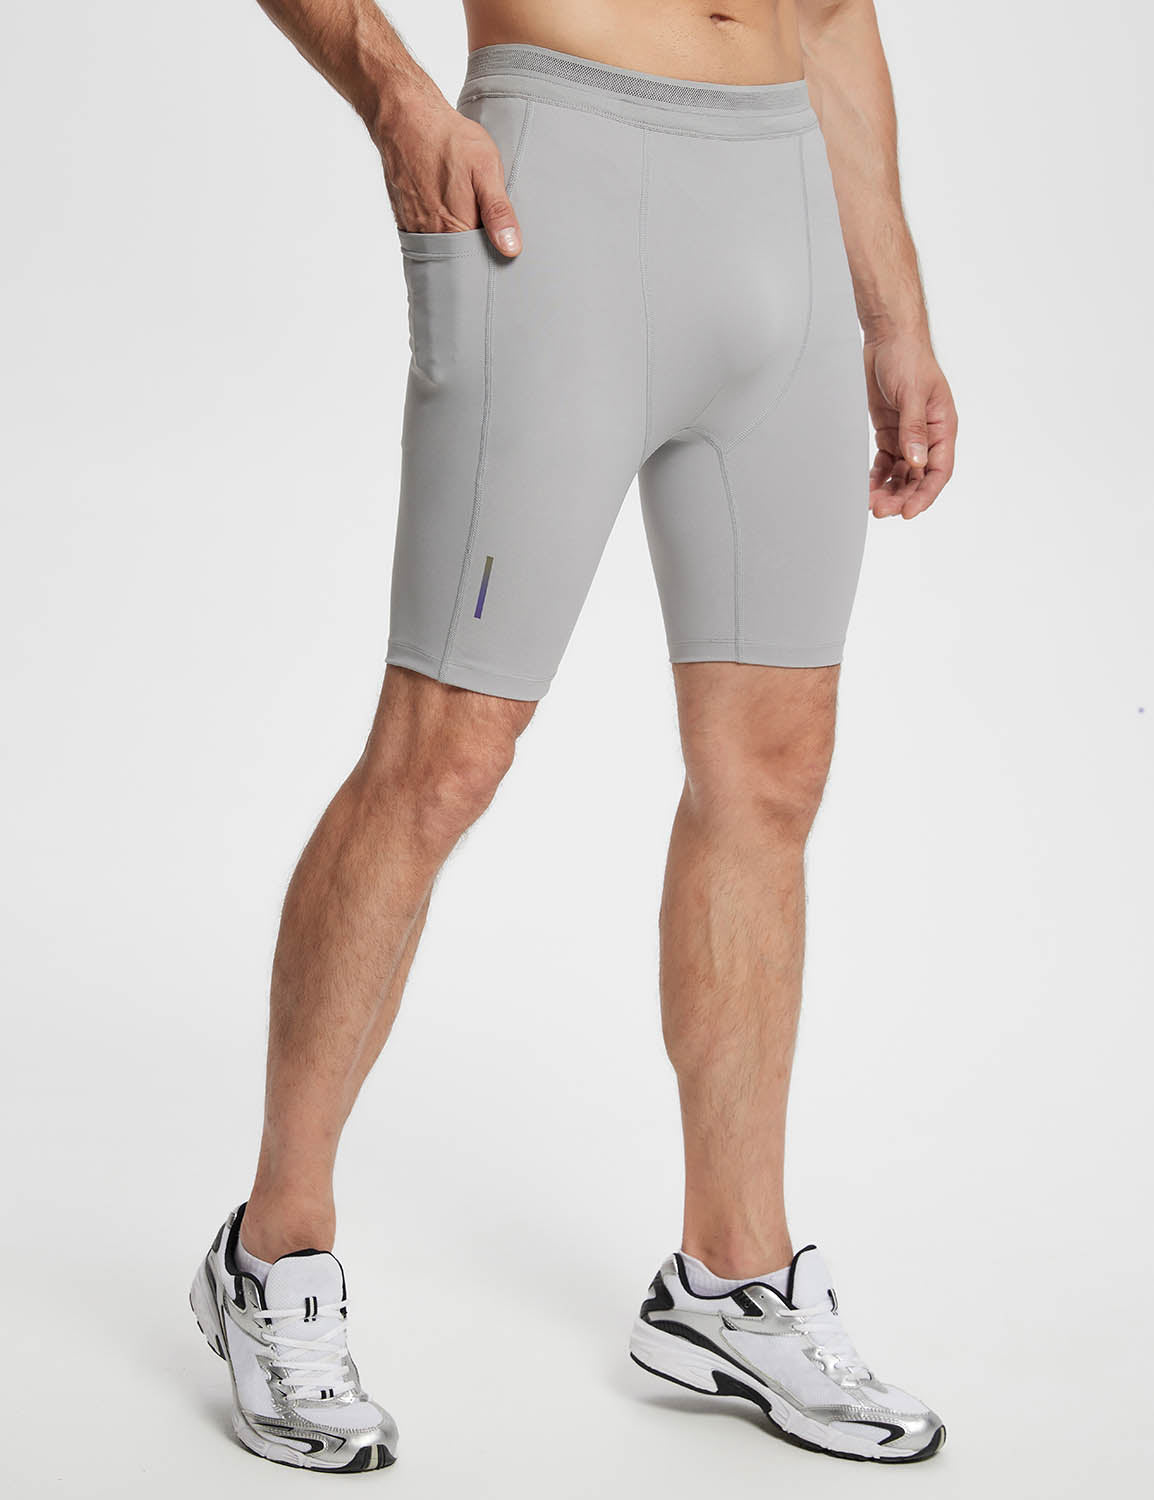 Baleaf Men's Lycra 2-in-1 Compresion Shorts (Website Exclusive) dbd060 Alloy Side